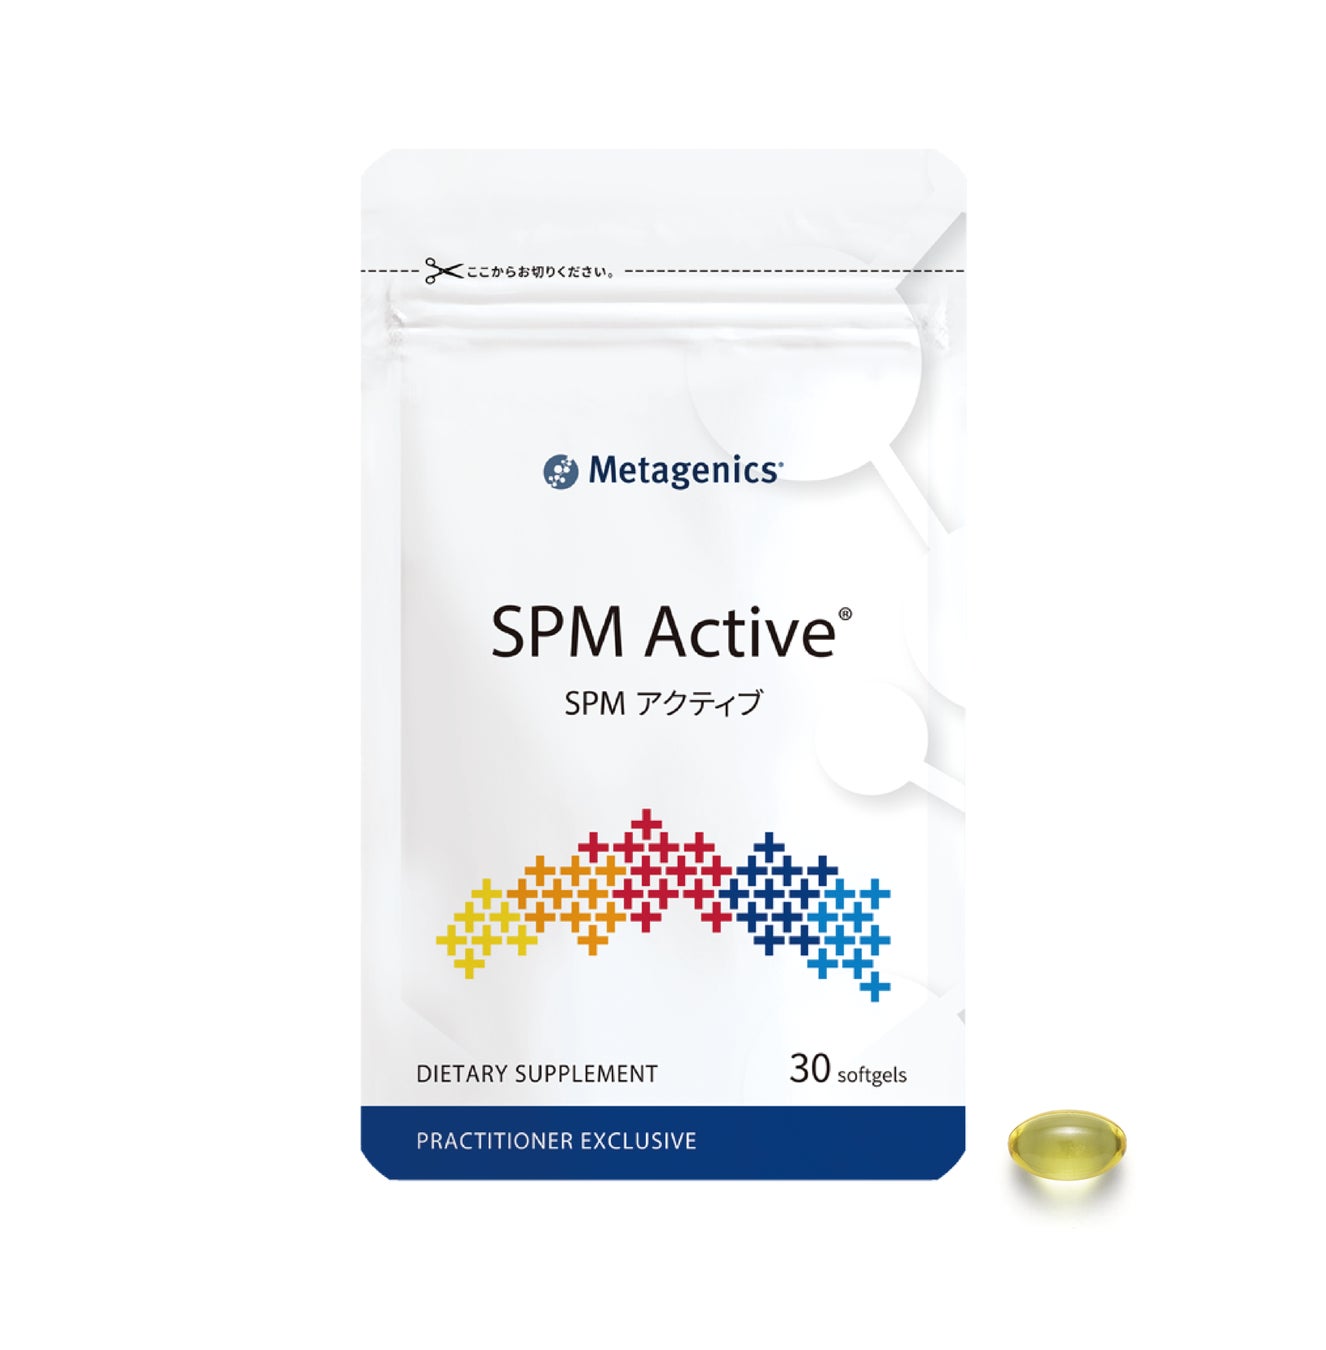 医療機関向けサプリメント　EPA・DHA由来『SPMアクティブ』30粒入り小包装パック追加発売